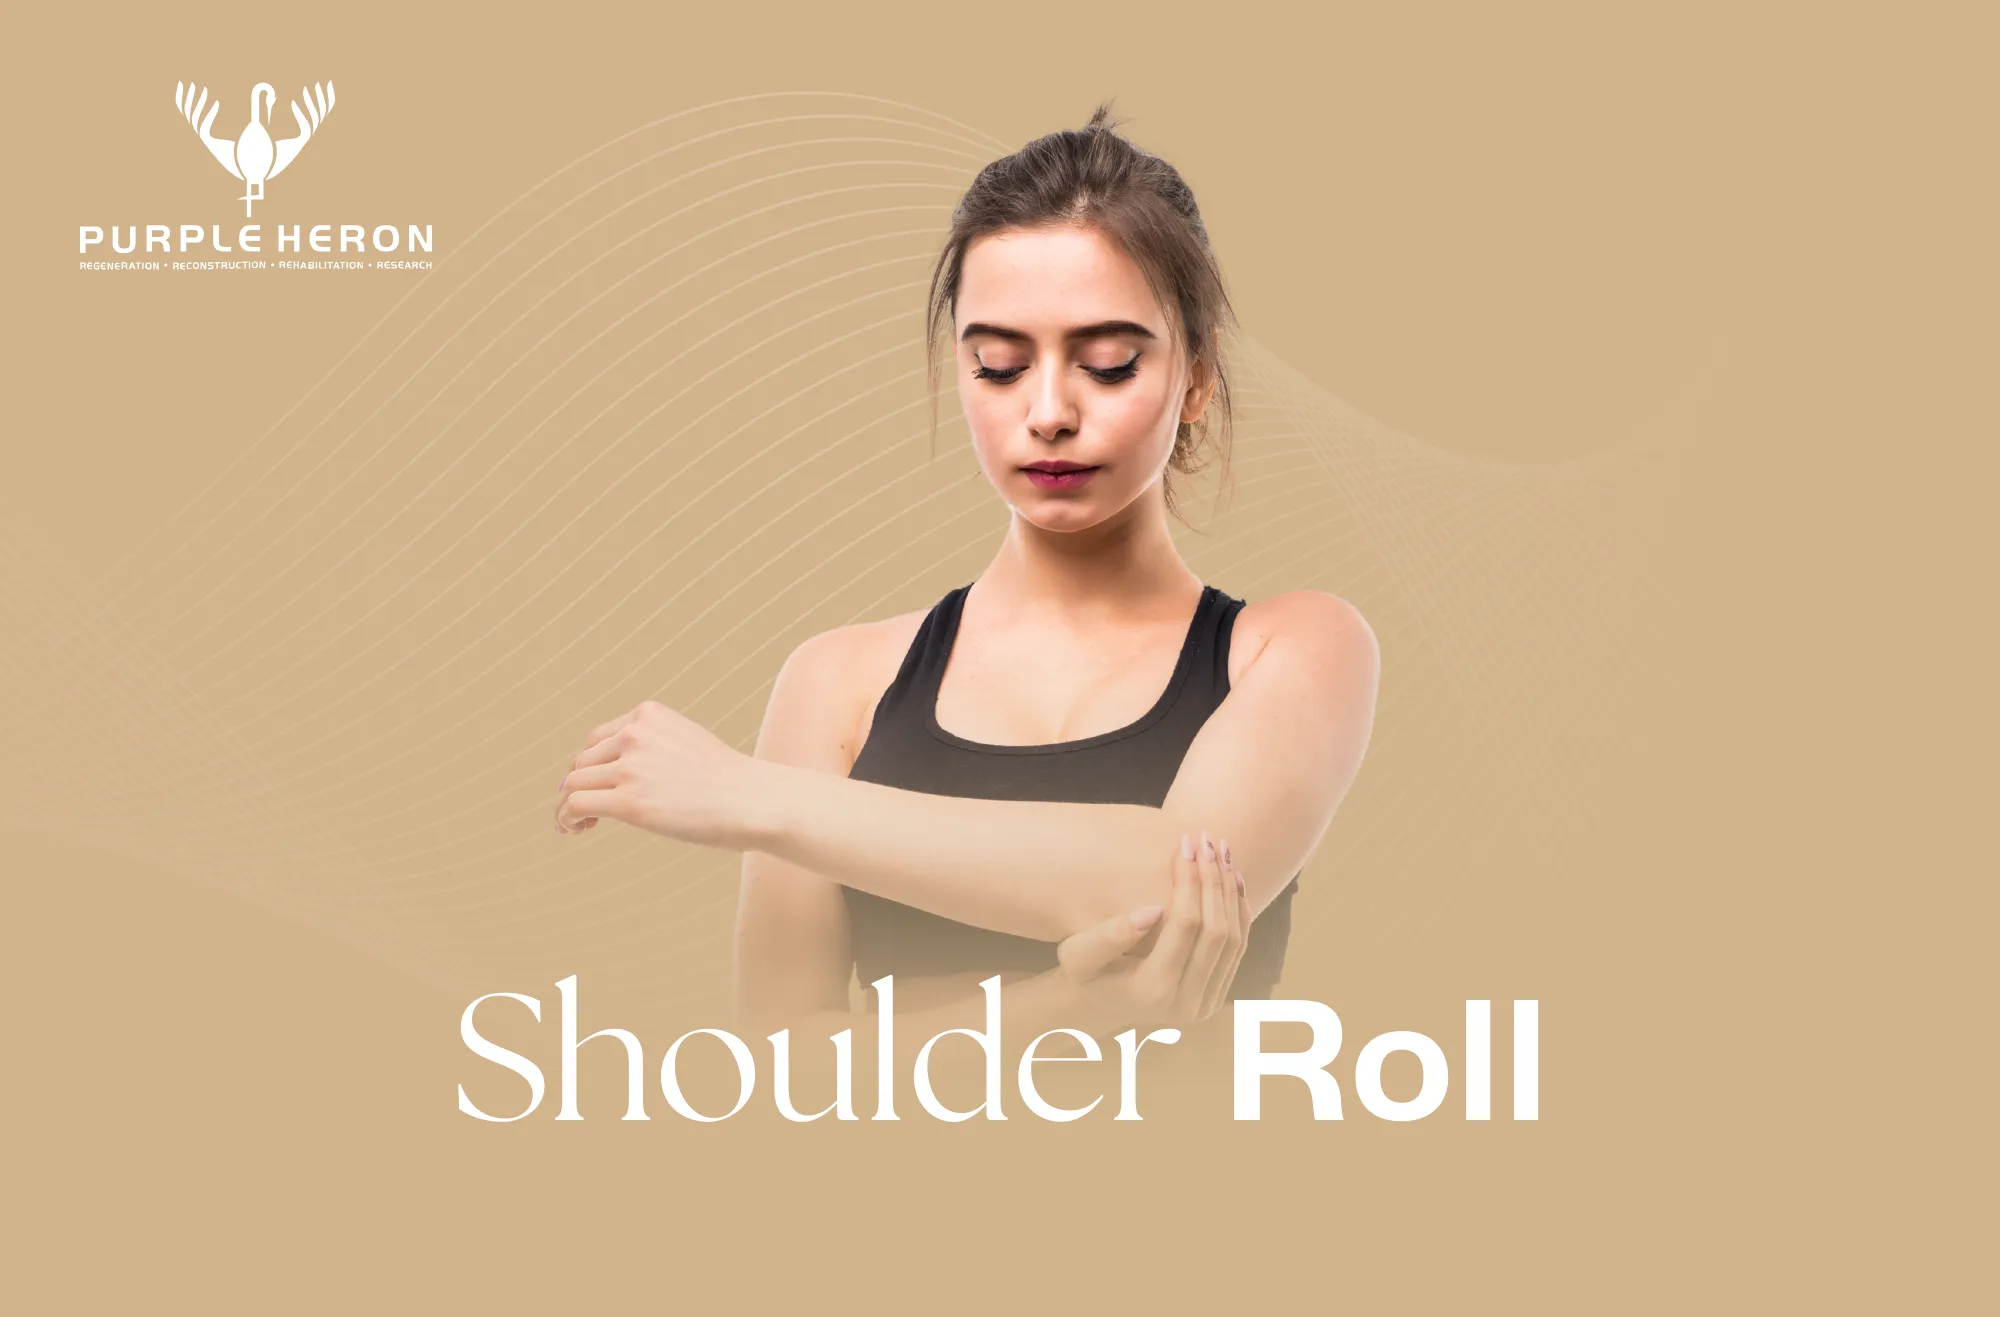 Shoulder Roll image